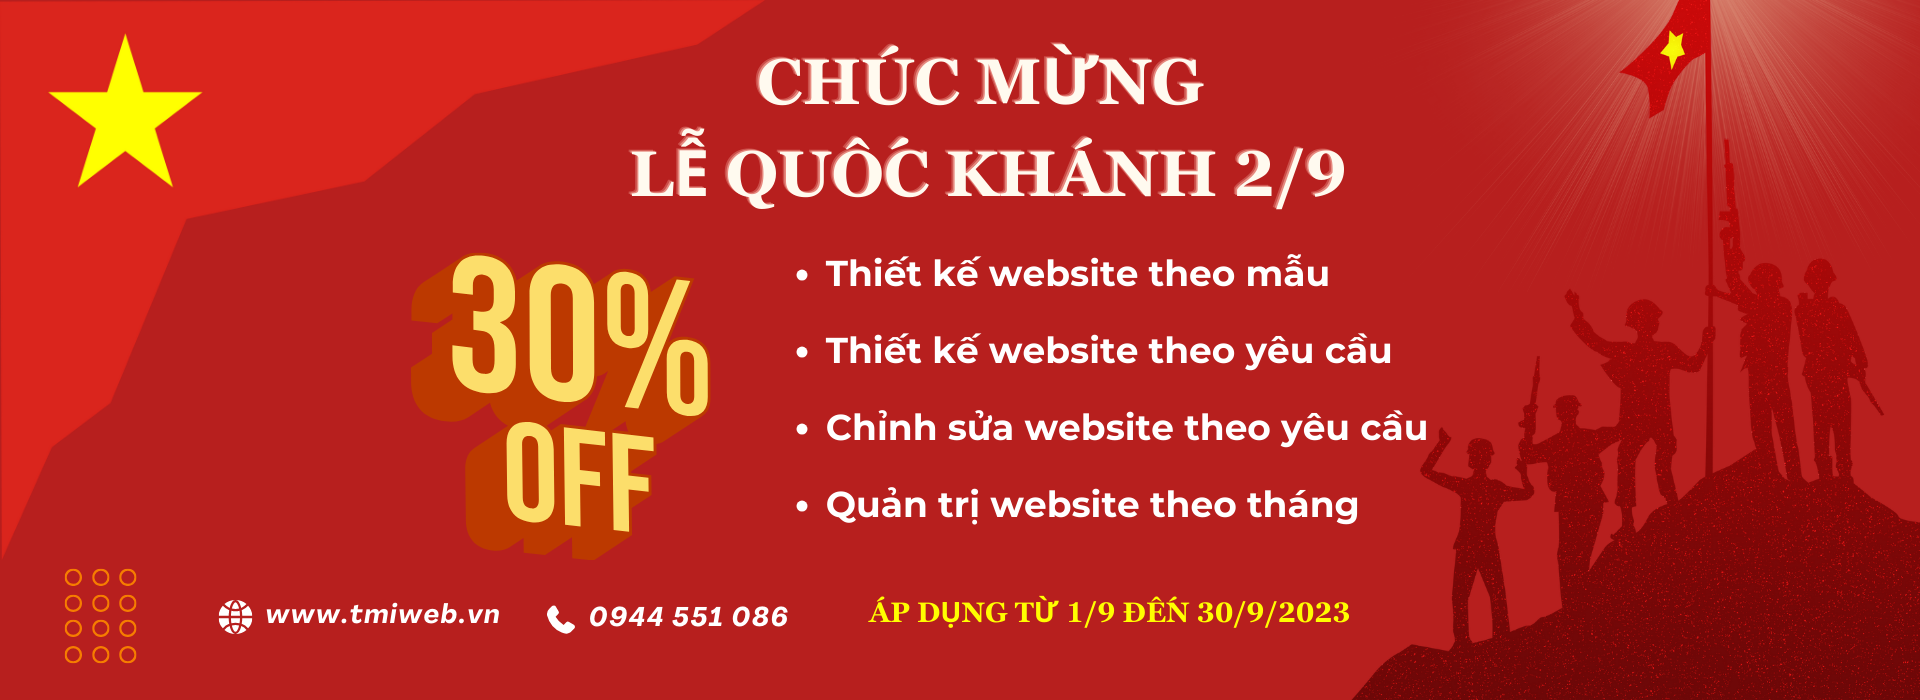 banner mung le quoc khanh desktop